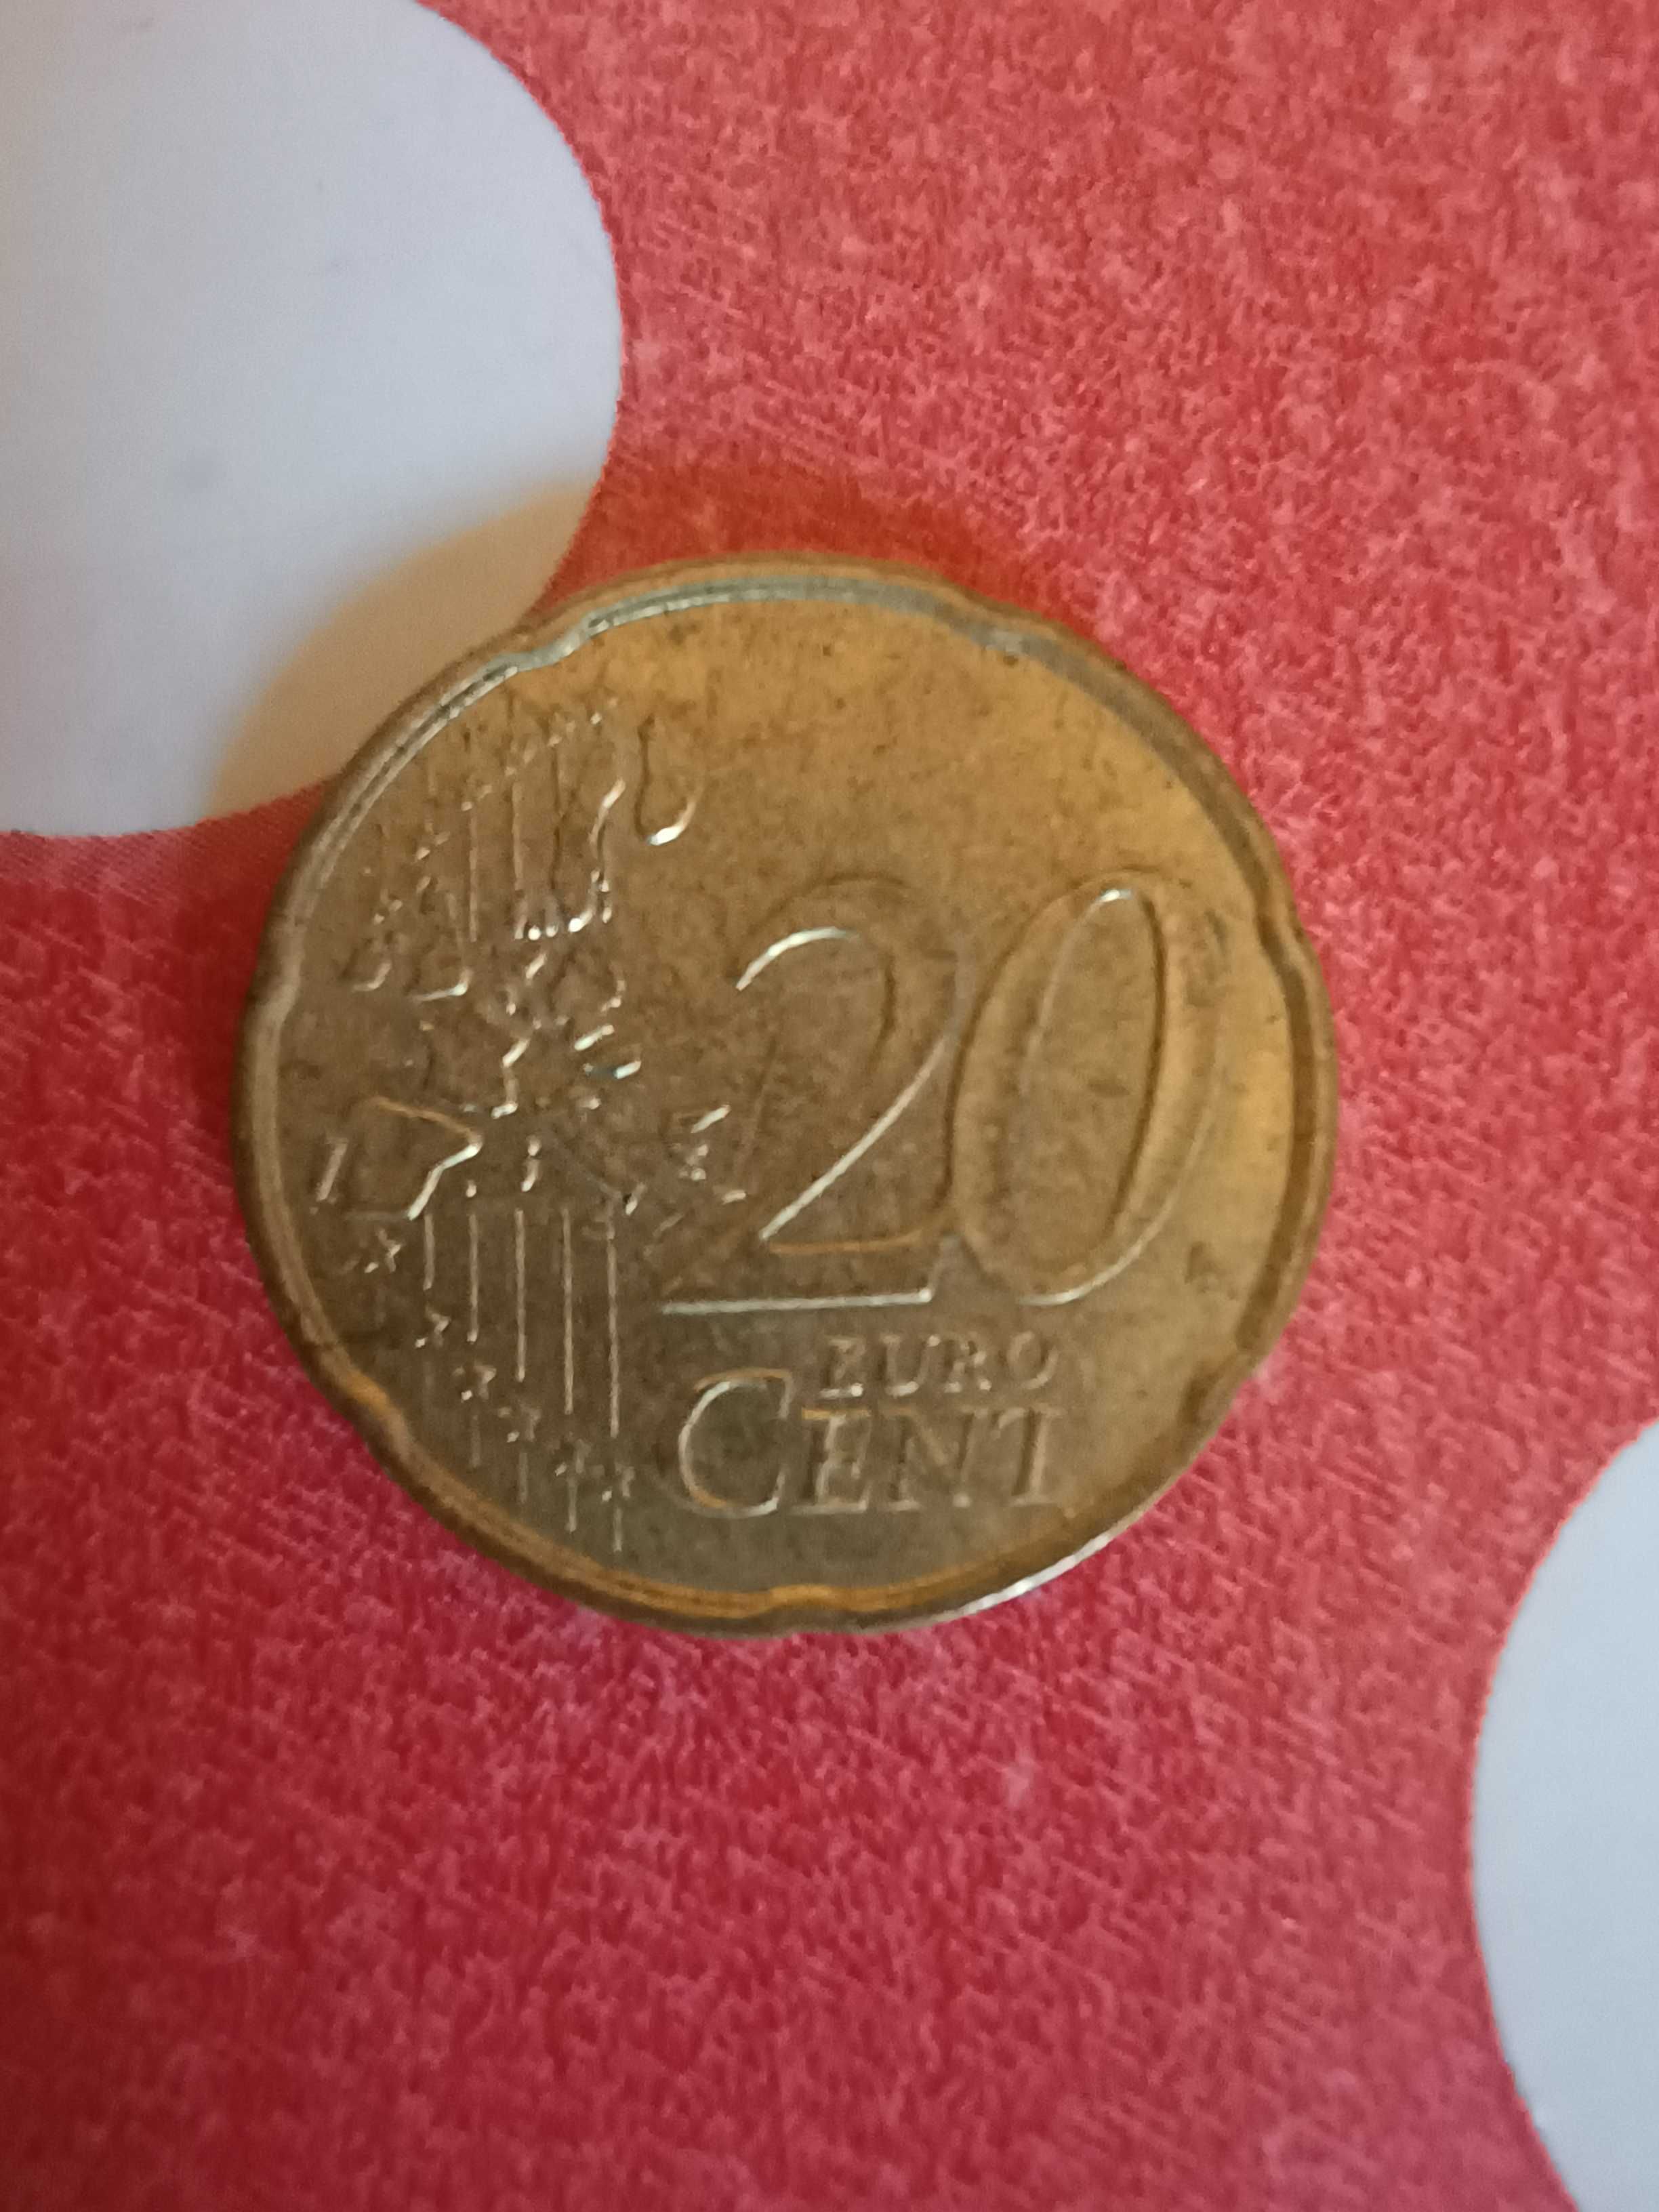 de vanzare 2 monezi rare respectiv da 20 si 10 eurocenti